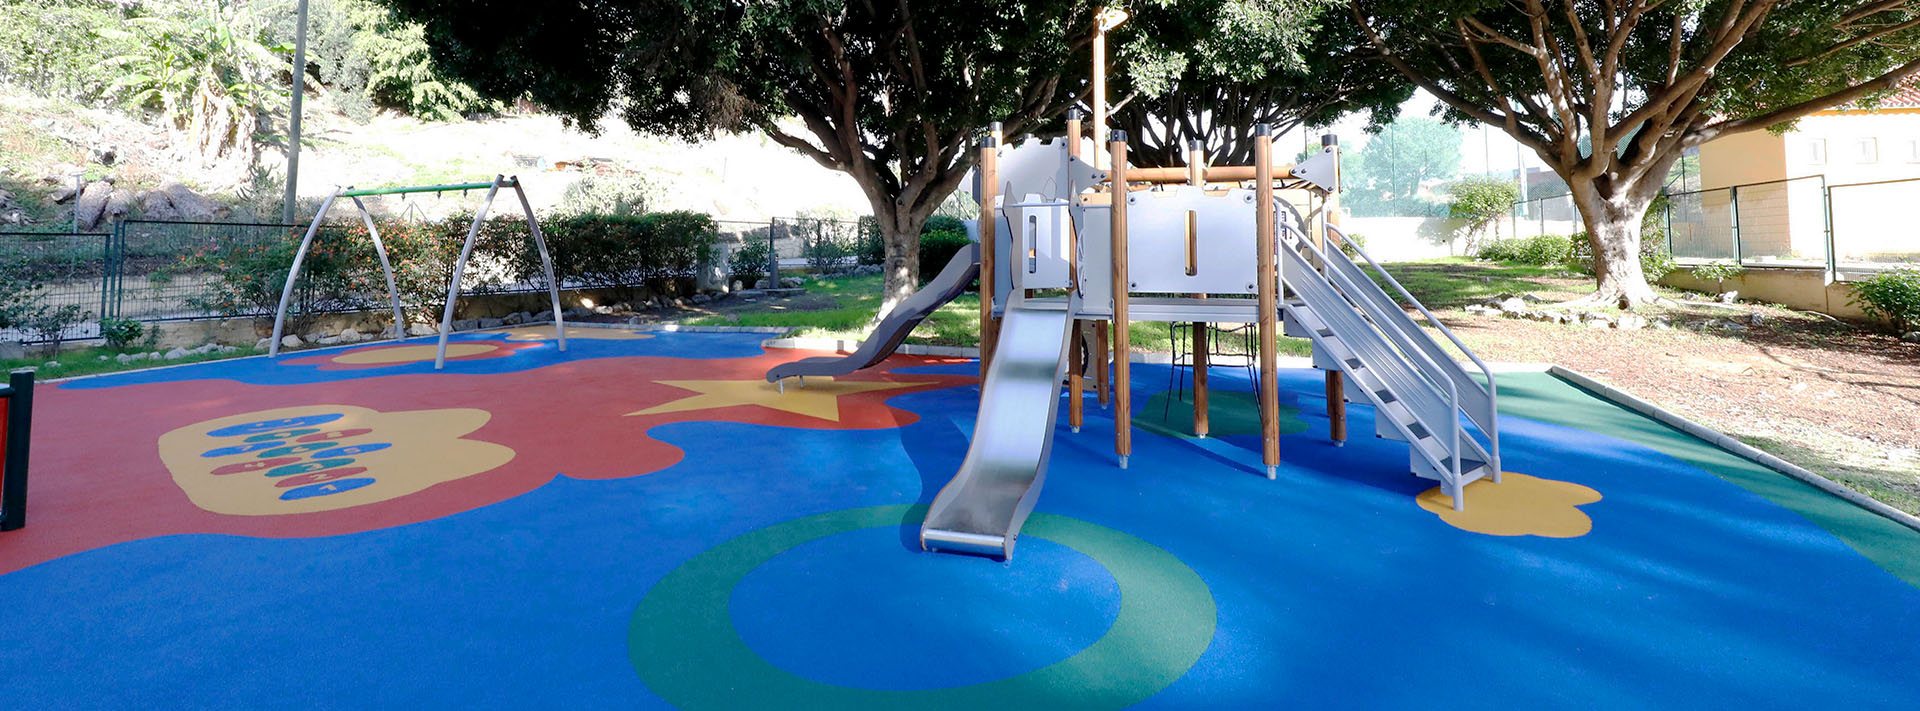 Nuevo acondicionamiento del parque infantil de El Salto del Agua